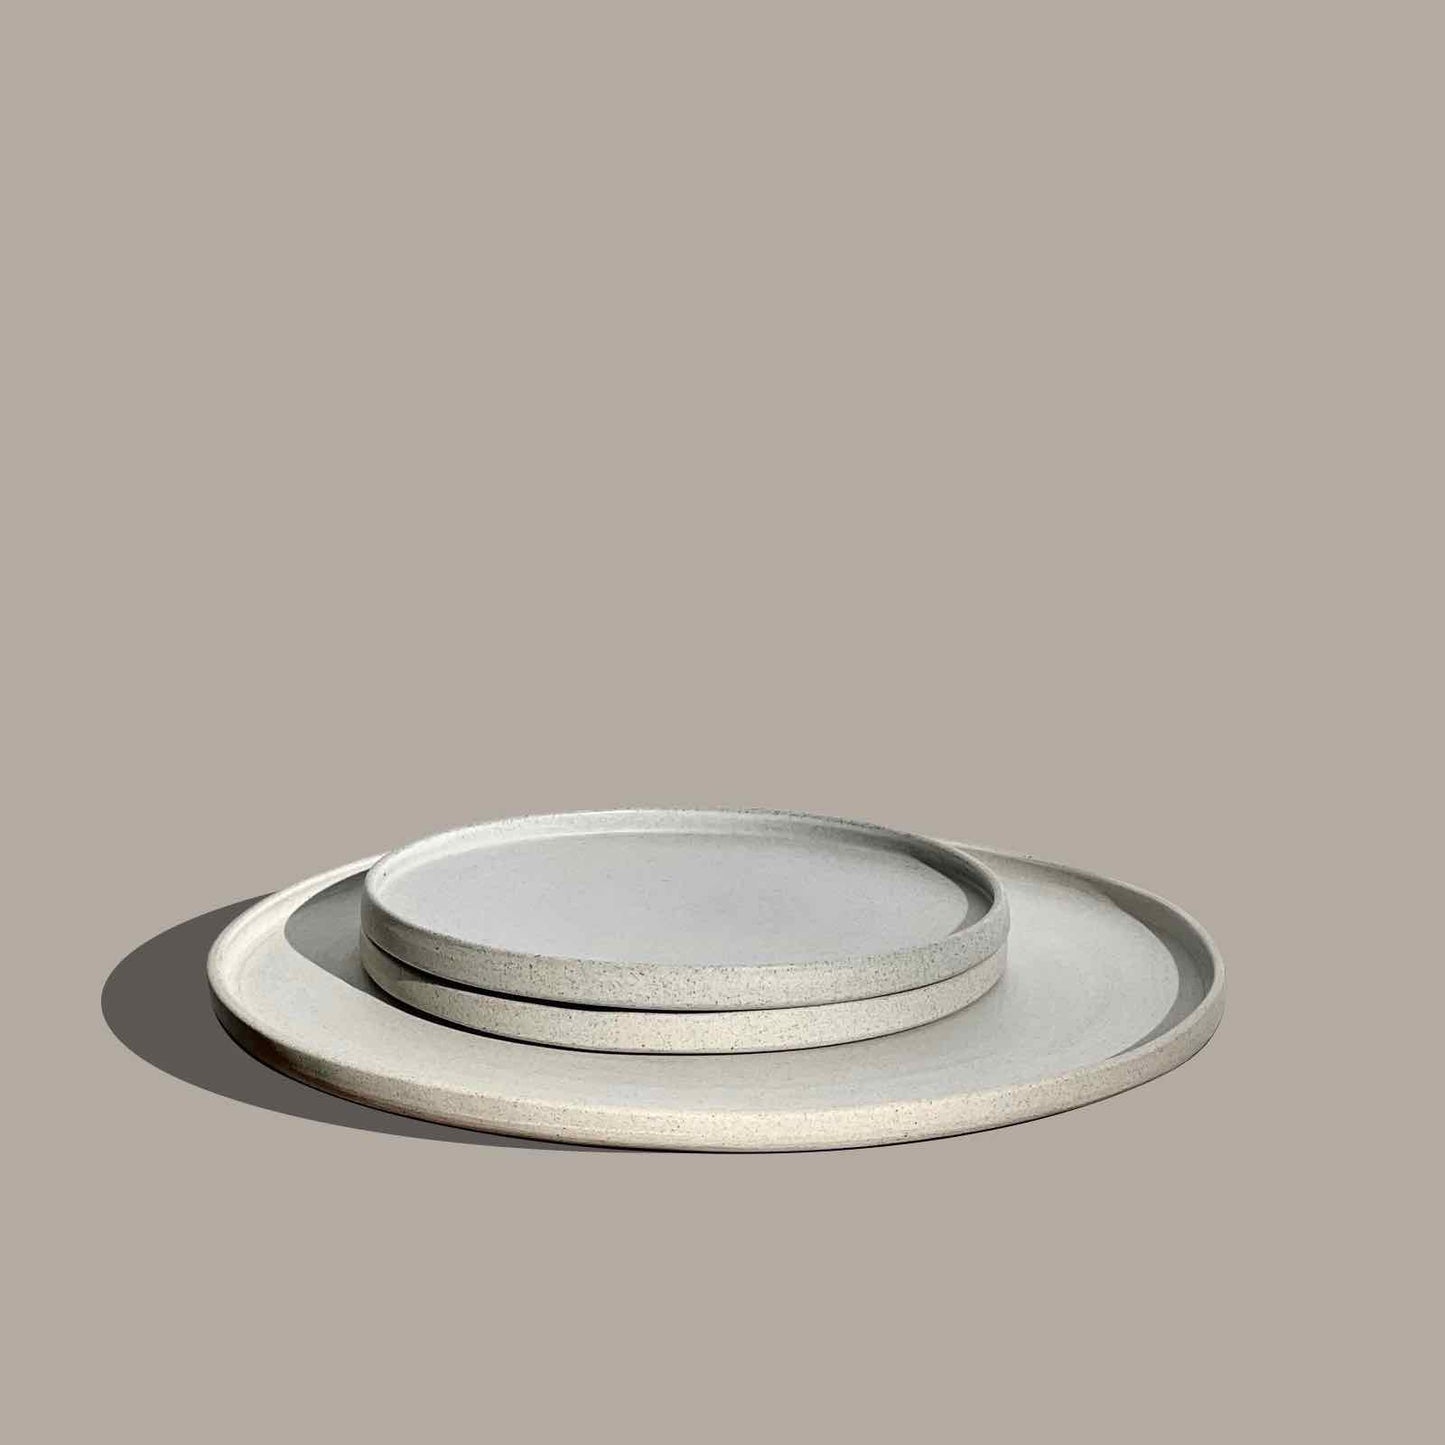 Large ceramic plates